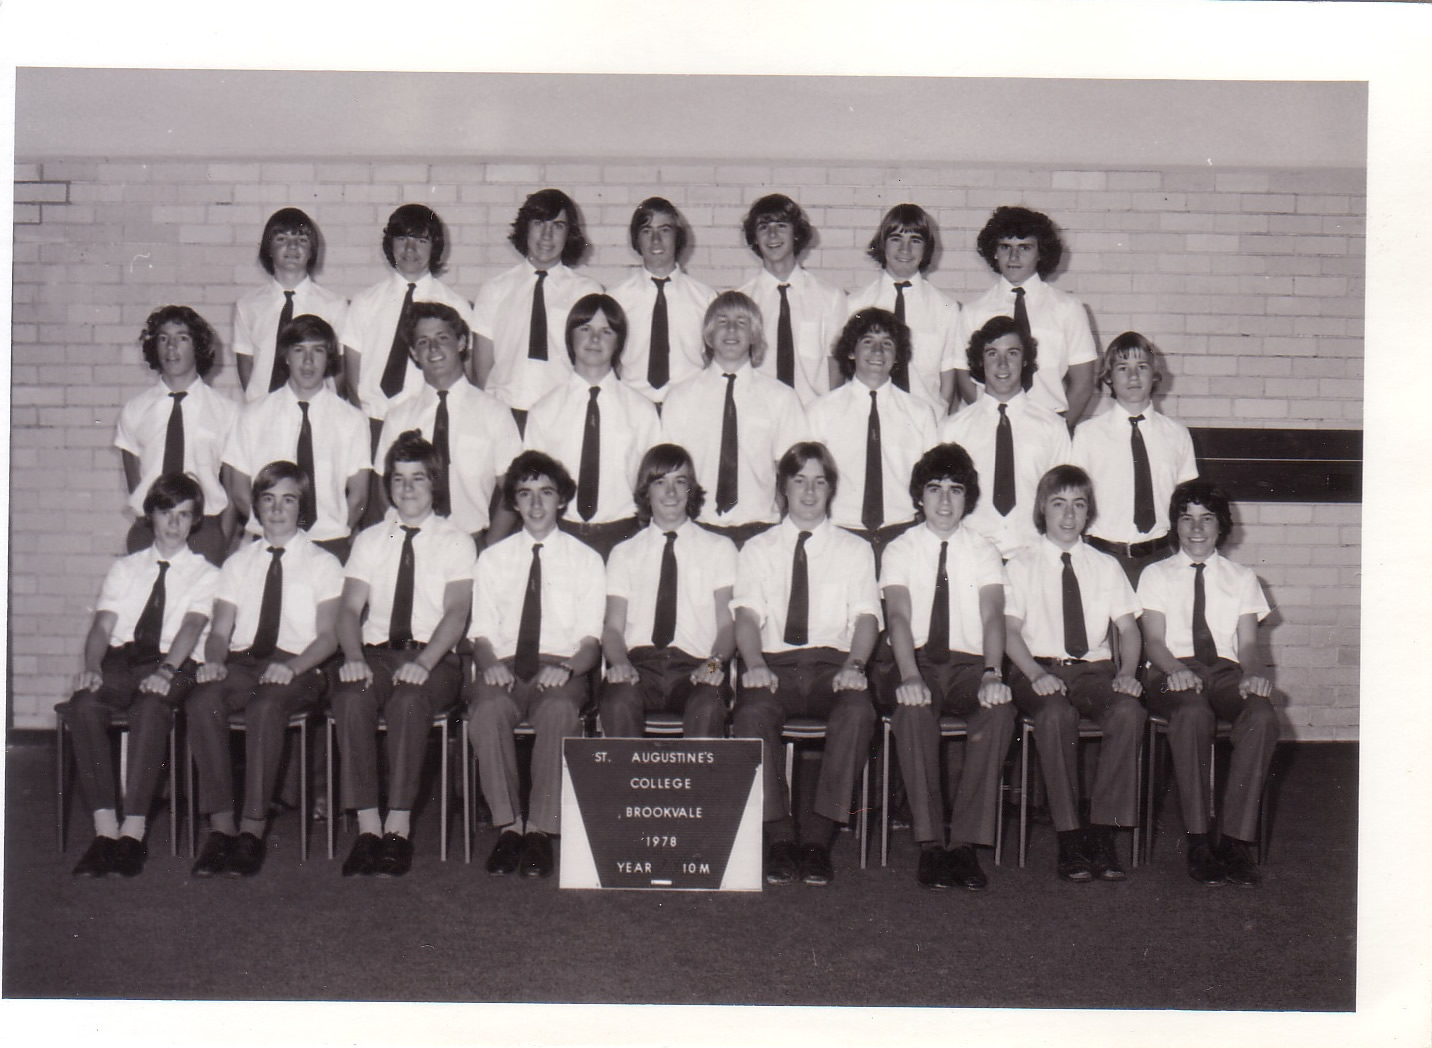 1978 - 10M class portrait